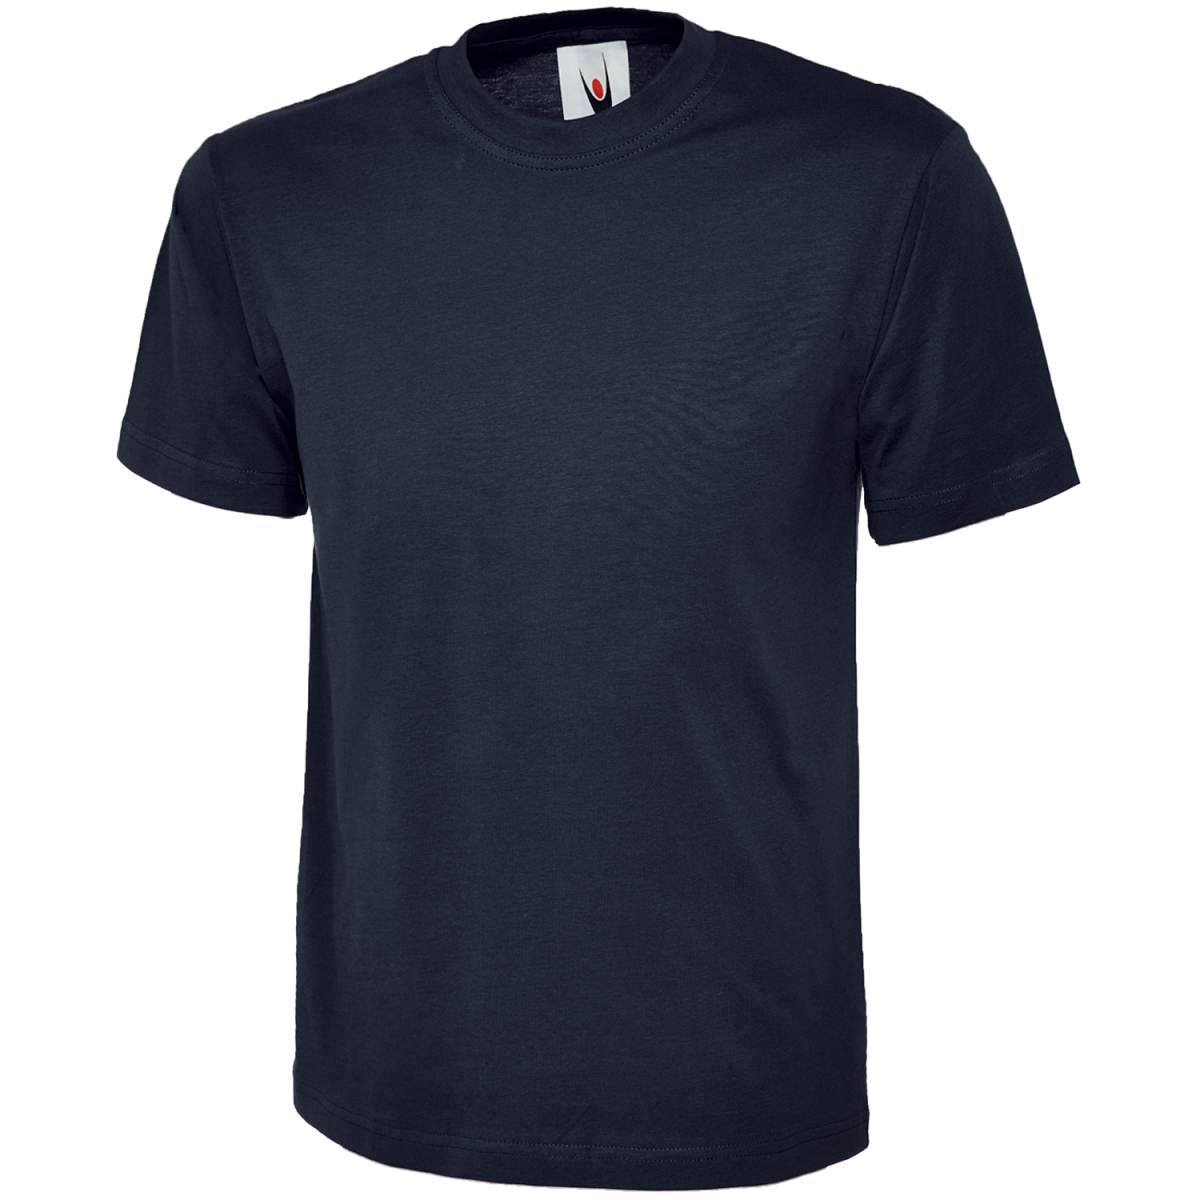 € T-Shirts Moderne Modell ULRICH und elysee, - 4,49 ergonomische